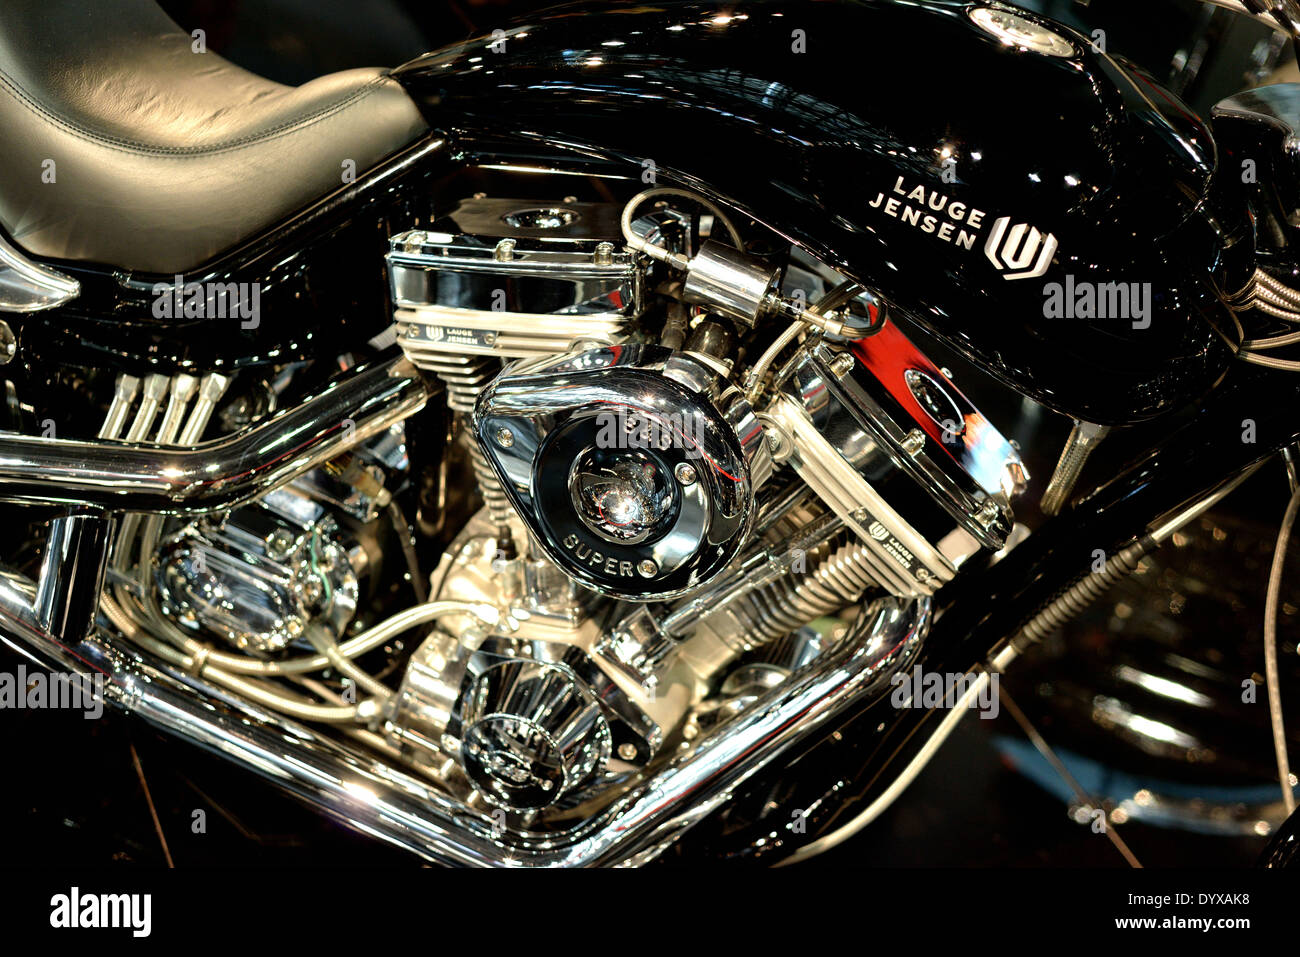 Lauge Jensen Motor detail Stockfoto